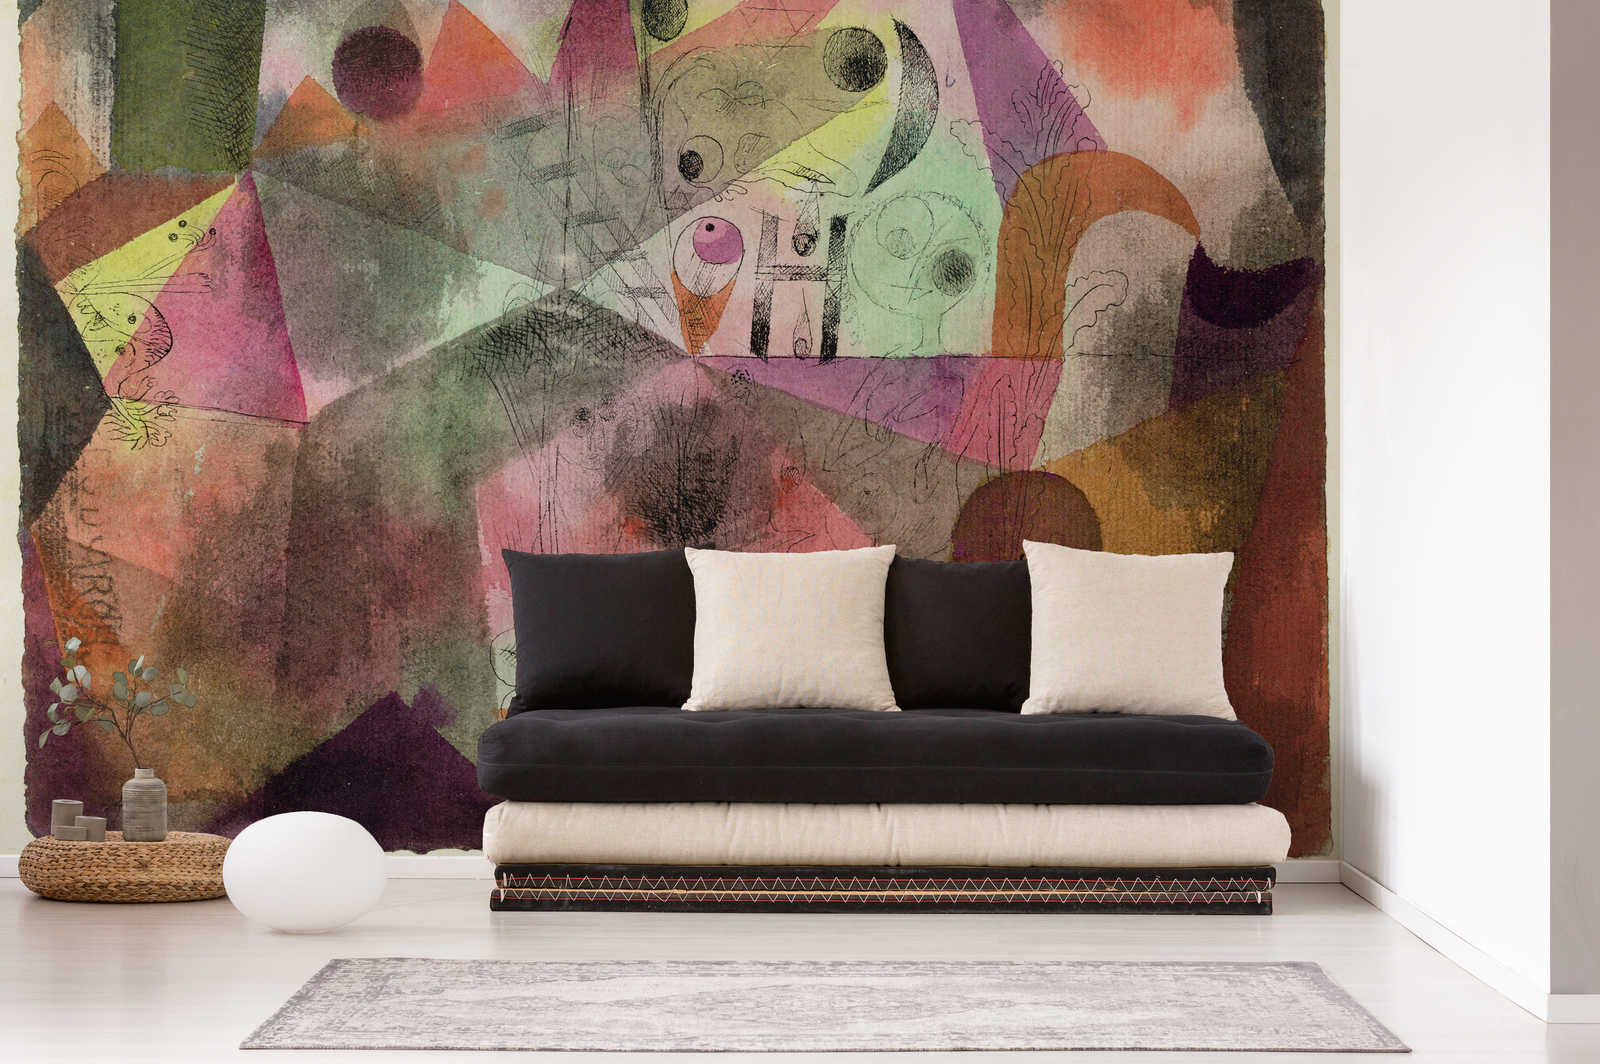             Papier peint panoramique "Avec le H" de Paul Klee
        